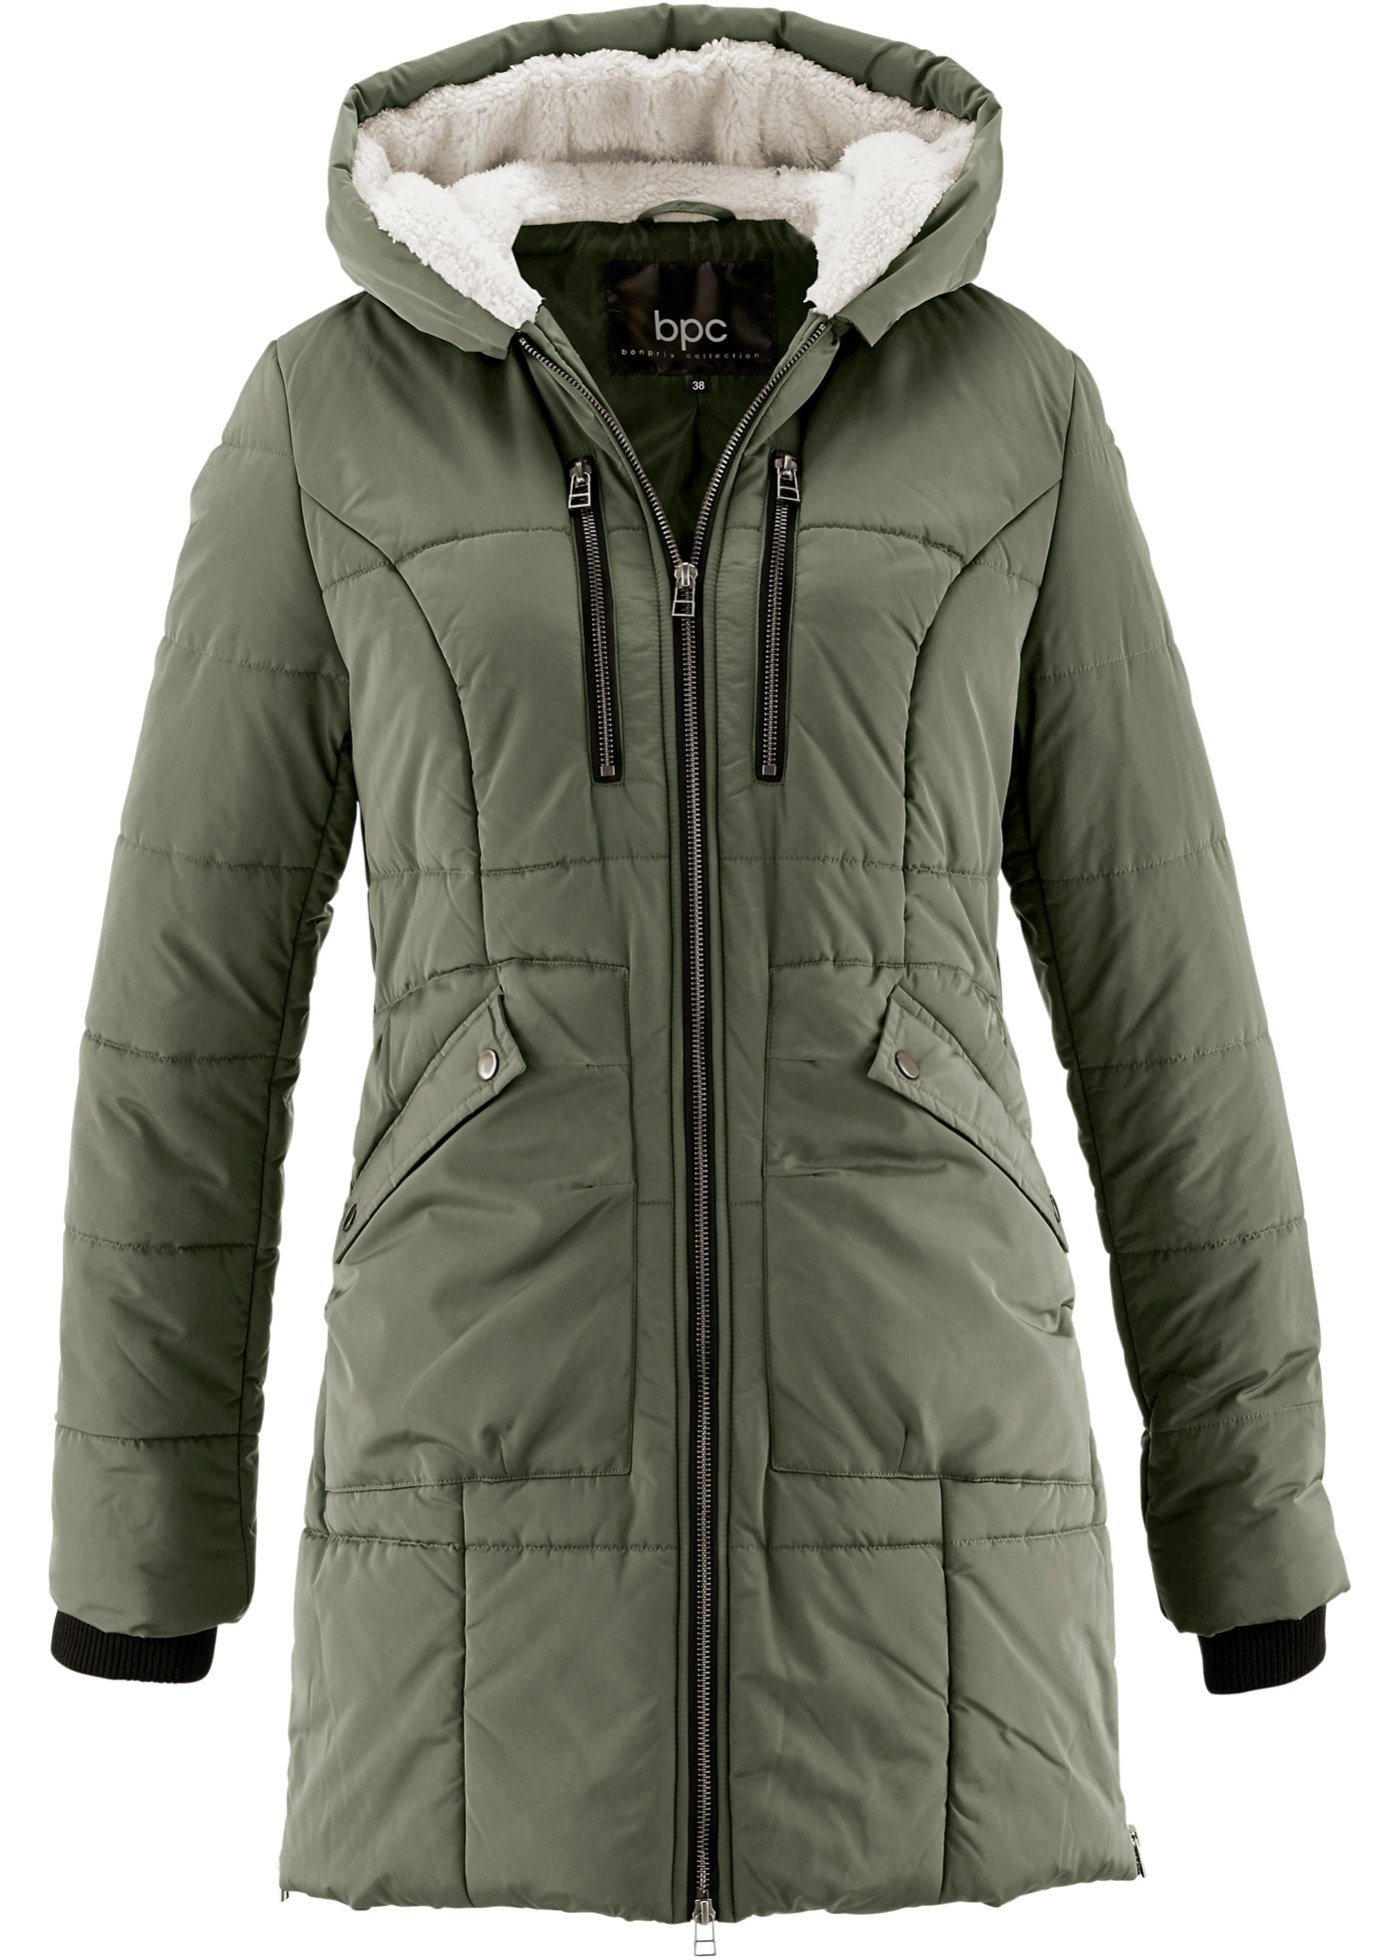 Bpc bonprix collection куртка. Bpc bonprix куртка мужская. Куртка bpc bonprix collection зеленая. Бонприкс женские зимние куртки.